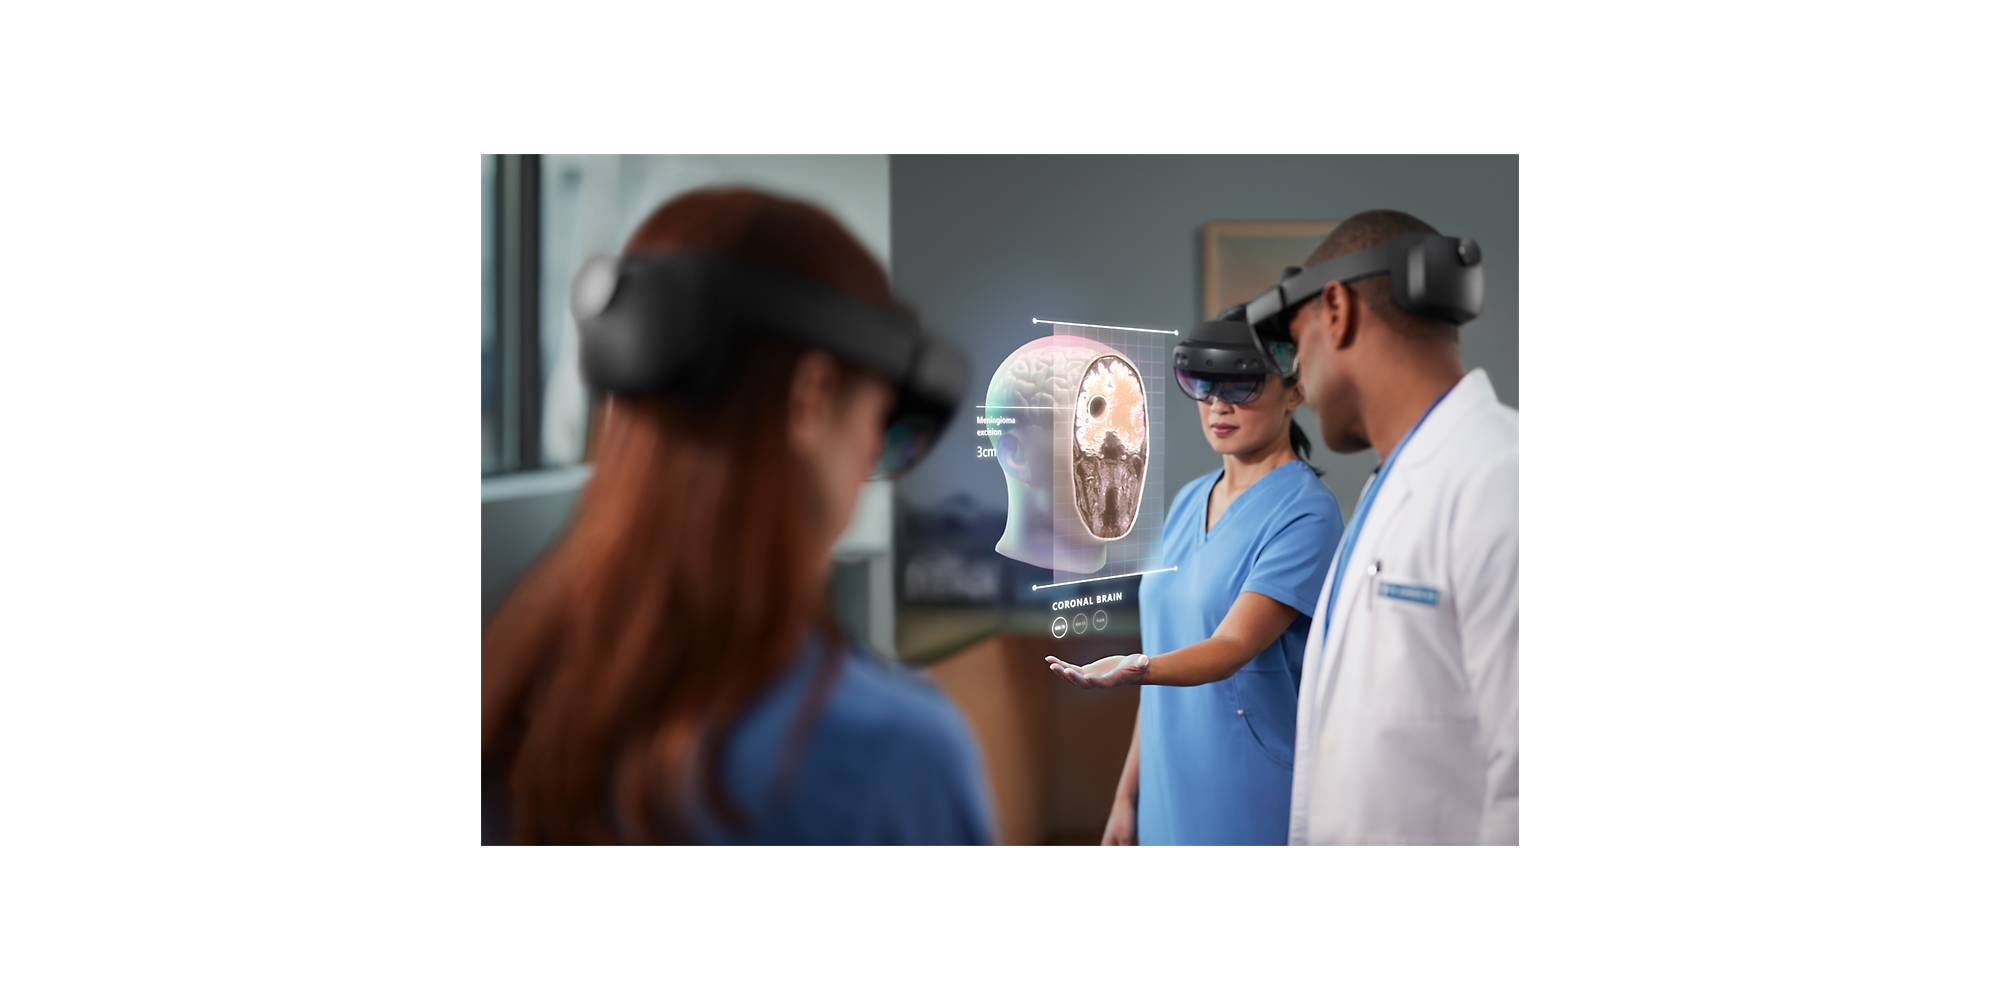 Kolme terveydenhuollon ammattilaista käyttämässä HoloLens 2:ta ihmispäätä kuvaavan yhdistetyn todellisuuden kaavion tarkastelemiseen. 